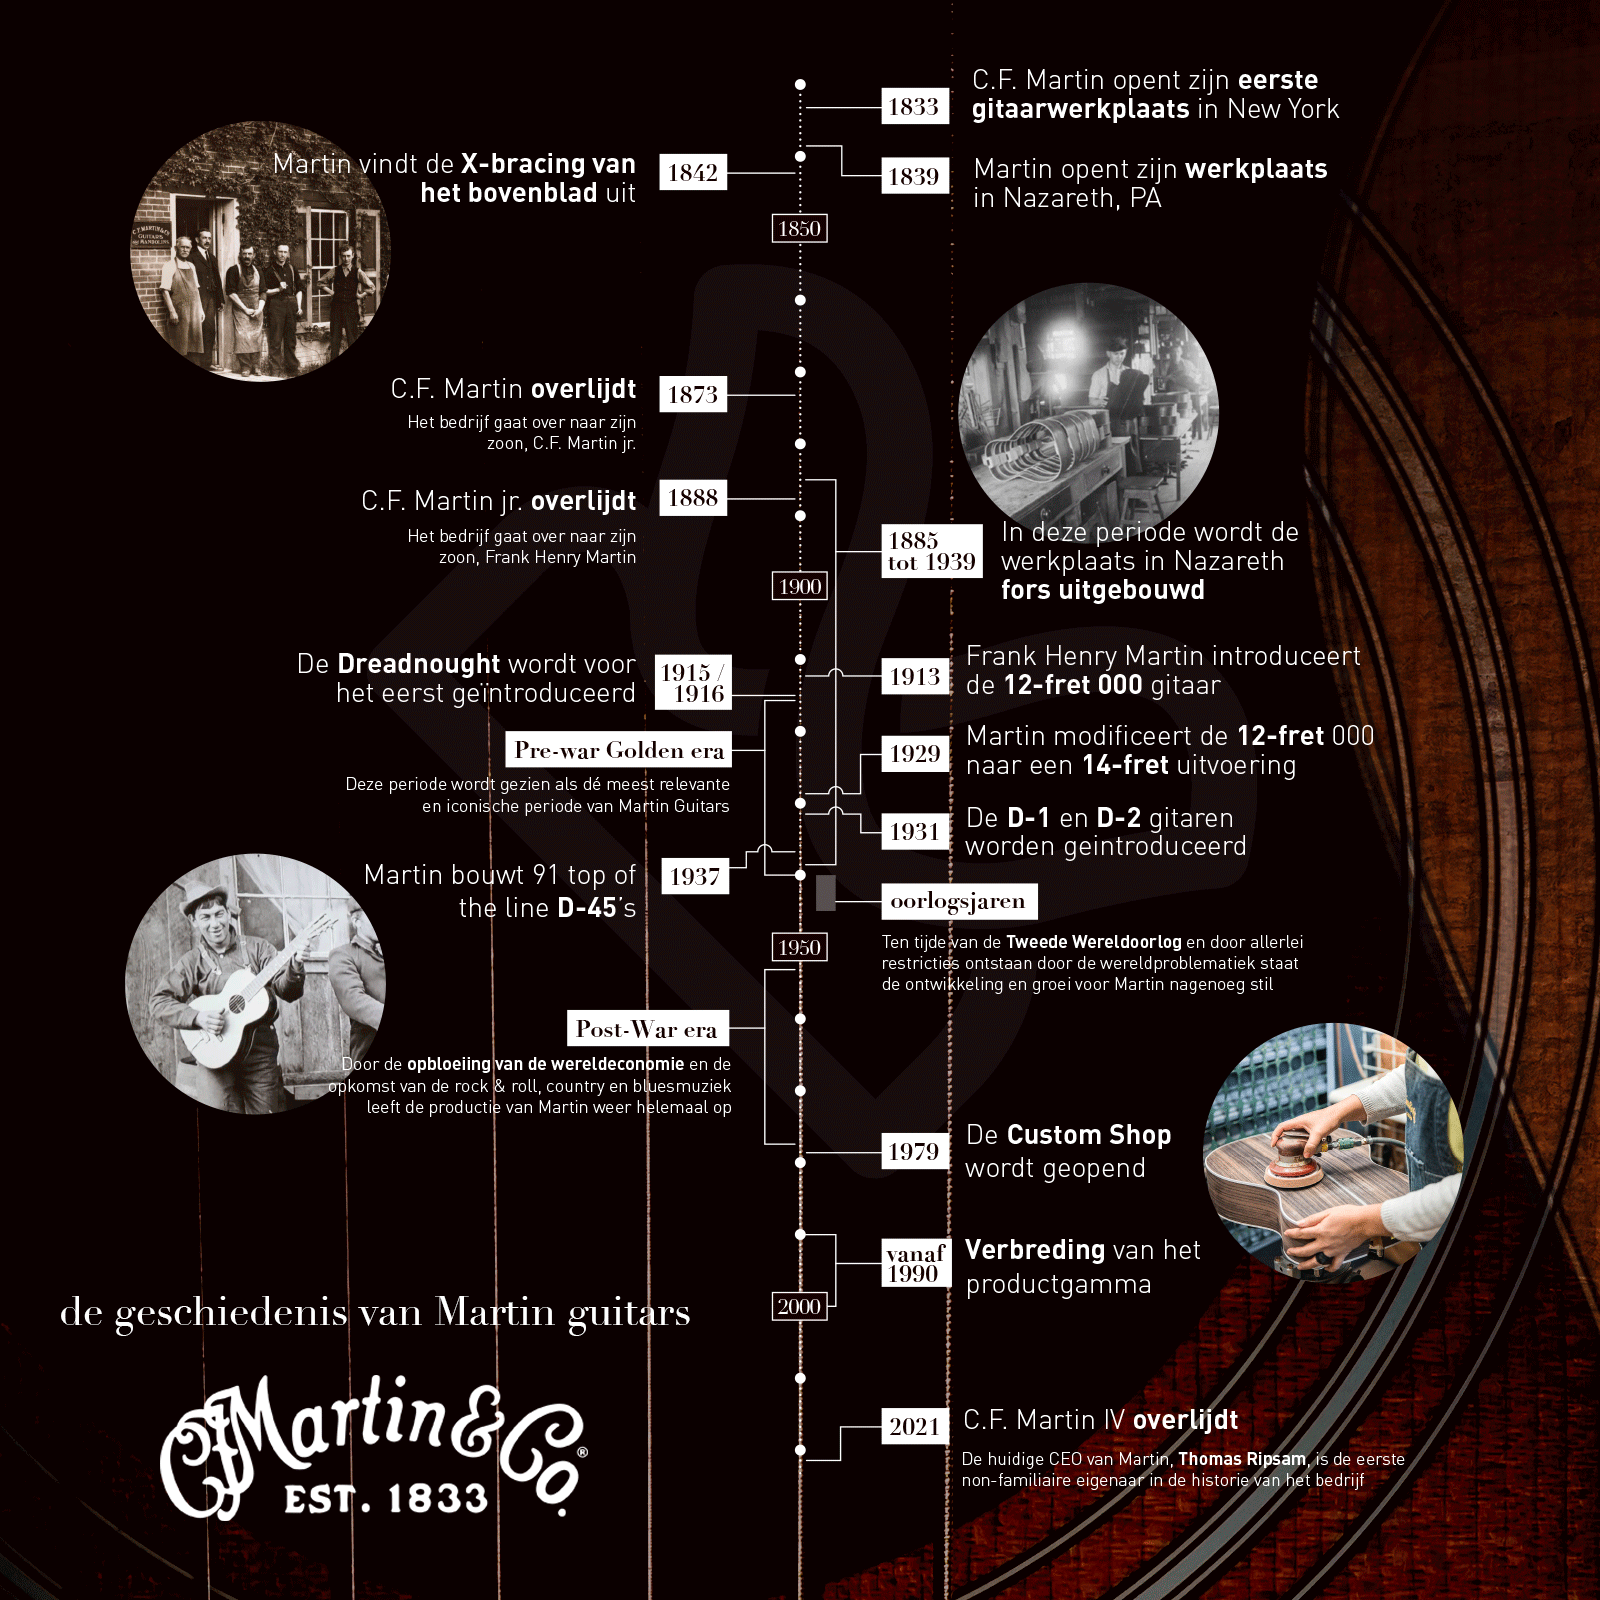 Martin & Co Timeline